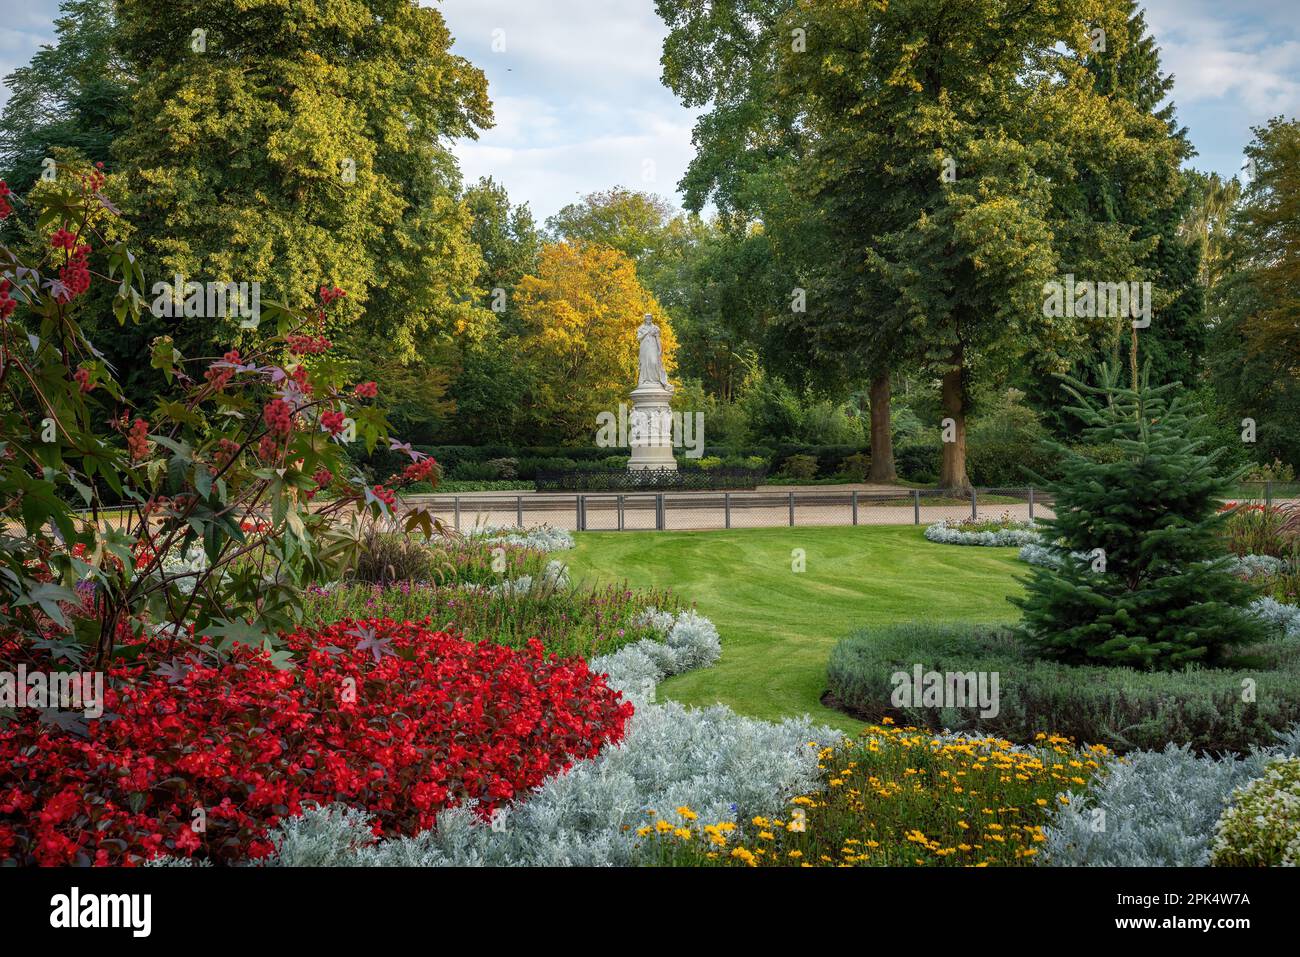 Statua della Regina Luisa di Prussia al parco Tiergarten - Berlino, Germania Foto Stock